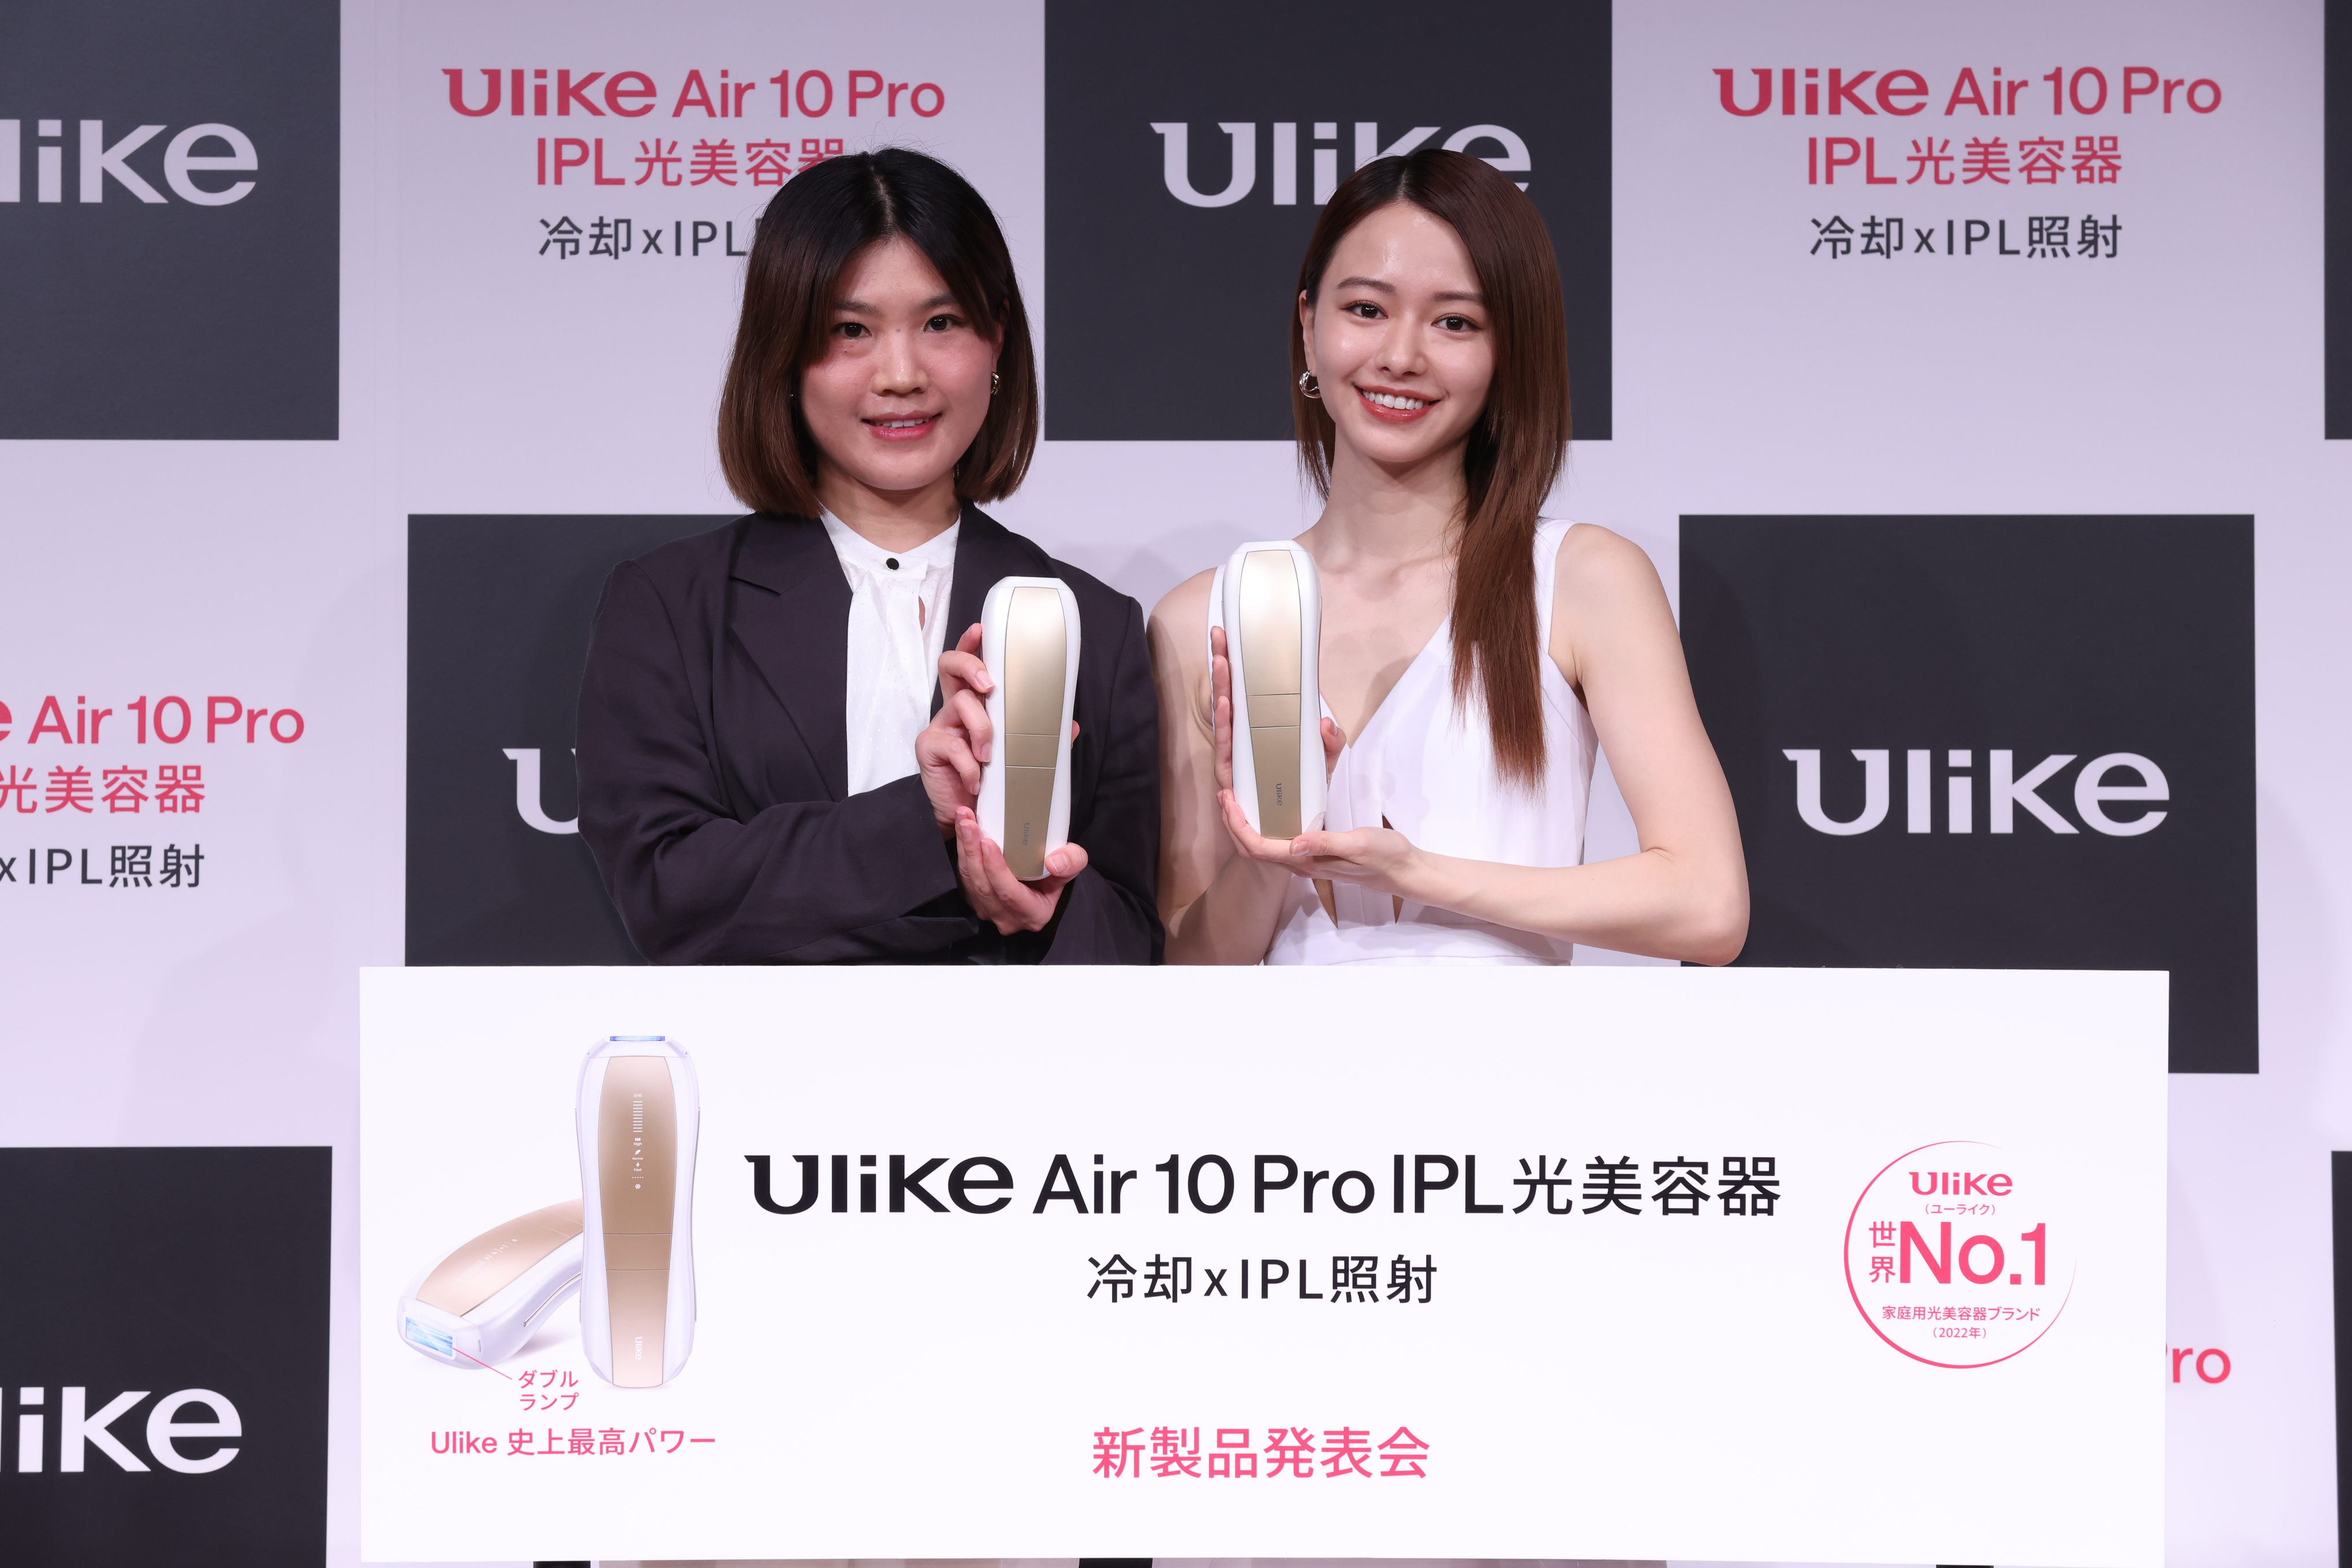 【イベントレポート】山本舞香さんがなりたいのは「愛犬にとってのNO.1」 ⁉「Ulike 新製品発表会」開催のサブ画像1